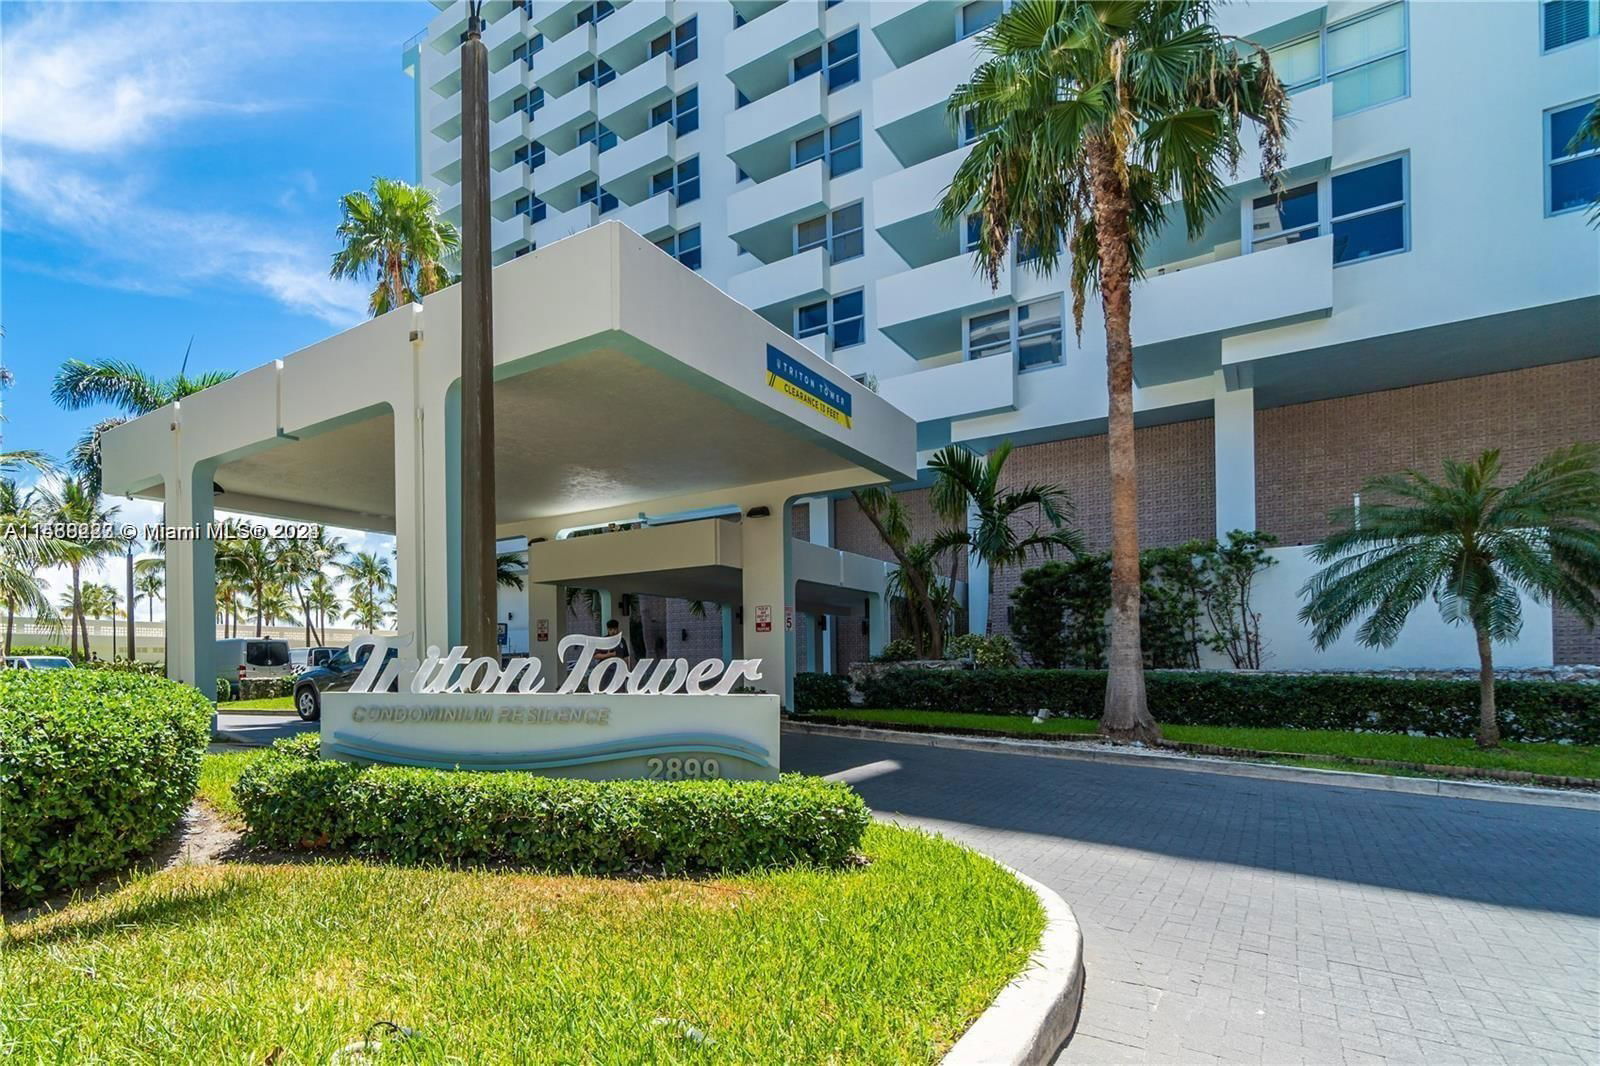 Real estate property located at 2899 Collins Ave #1433, Miami-Dade County, TRITON TOWER CONDO, Miami Beach, FL